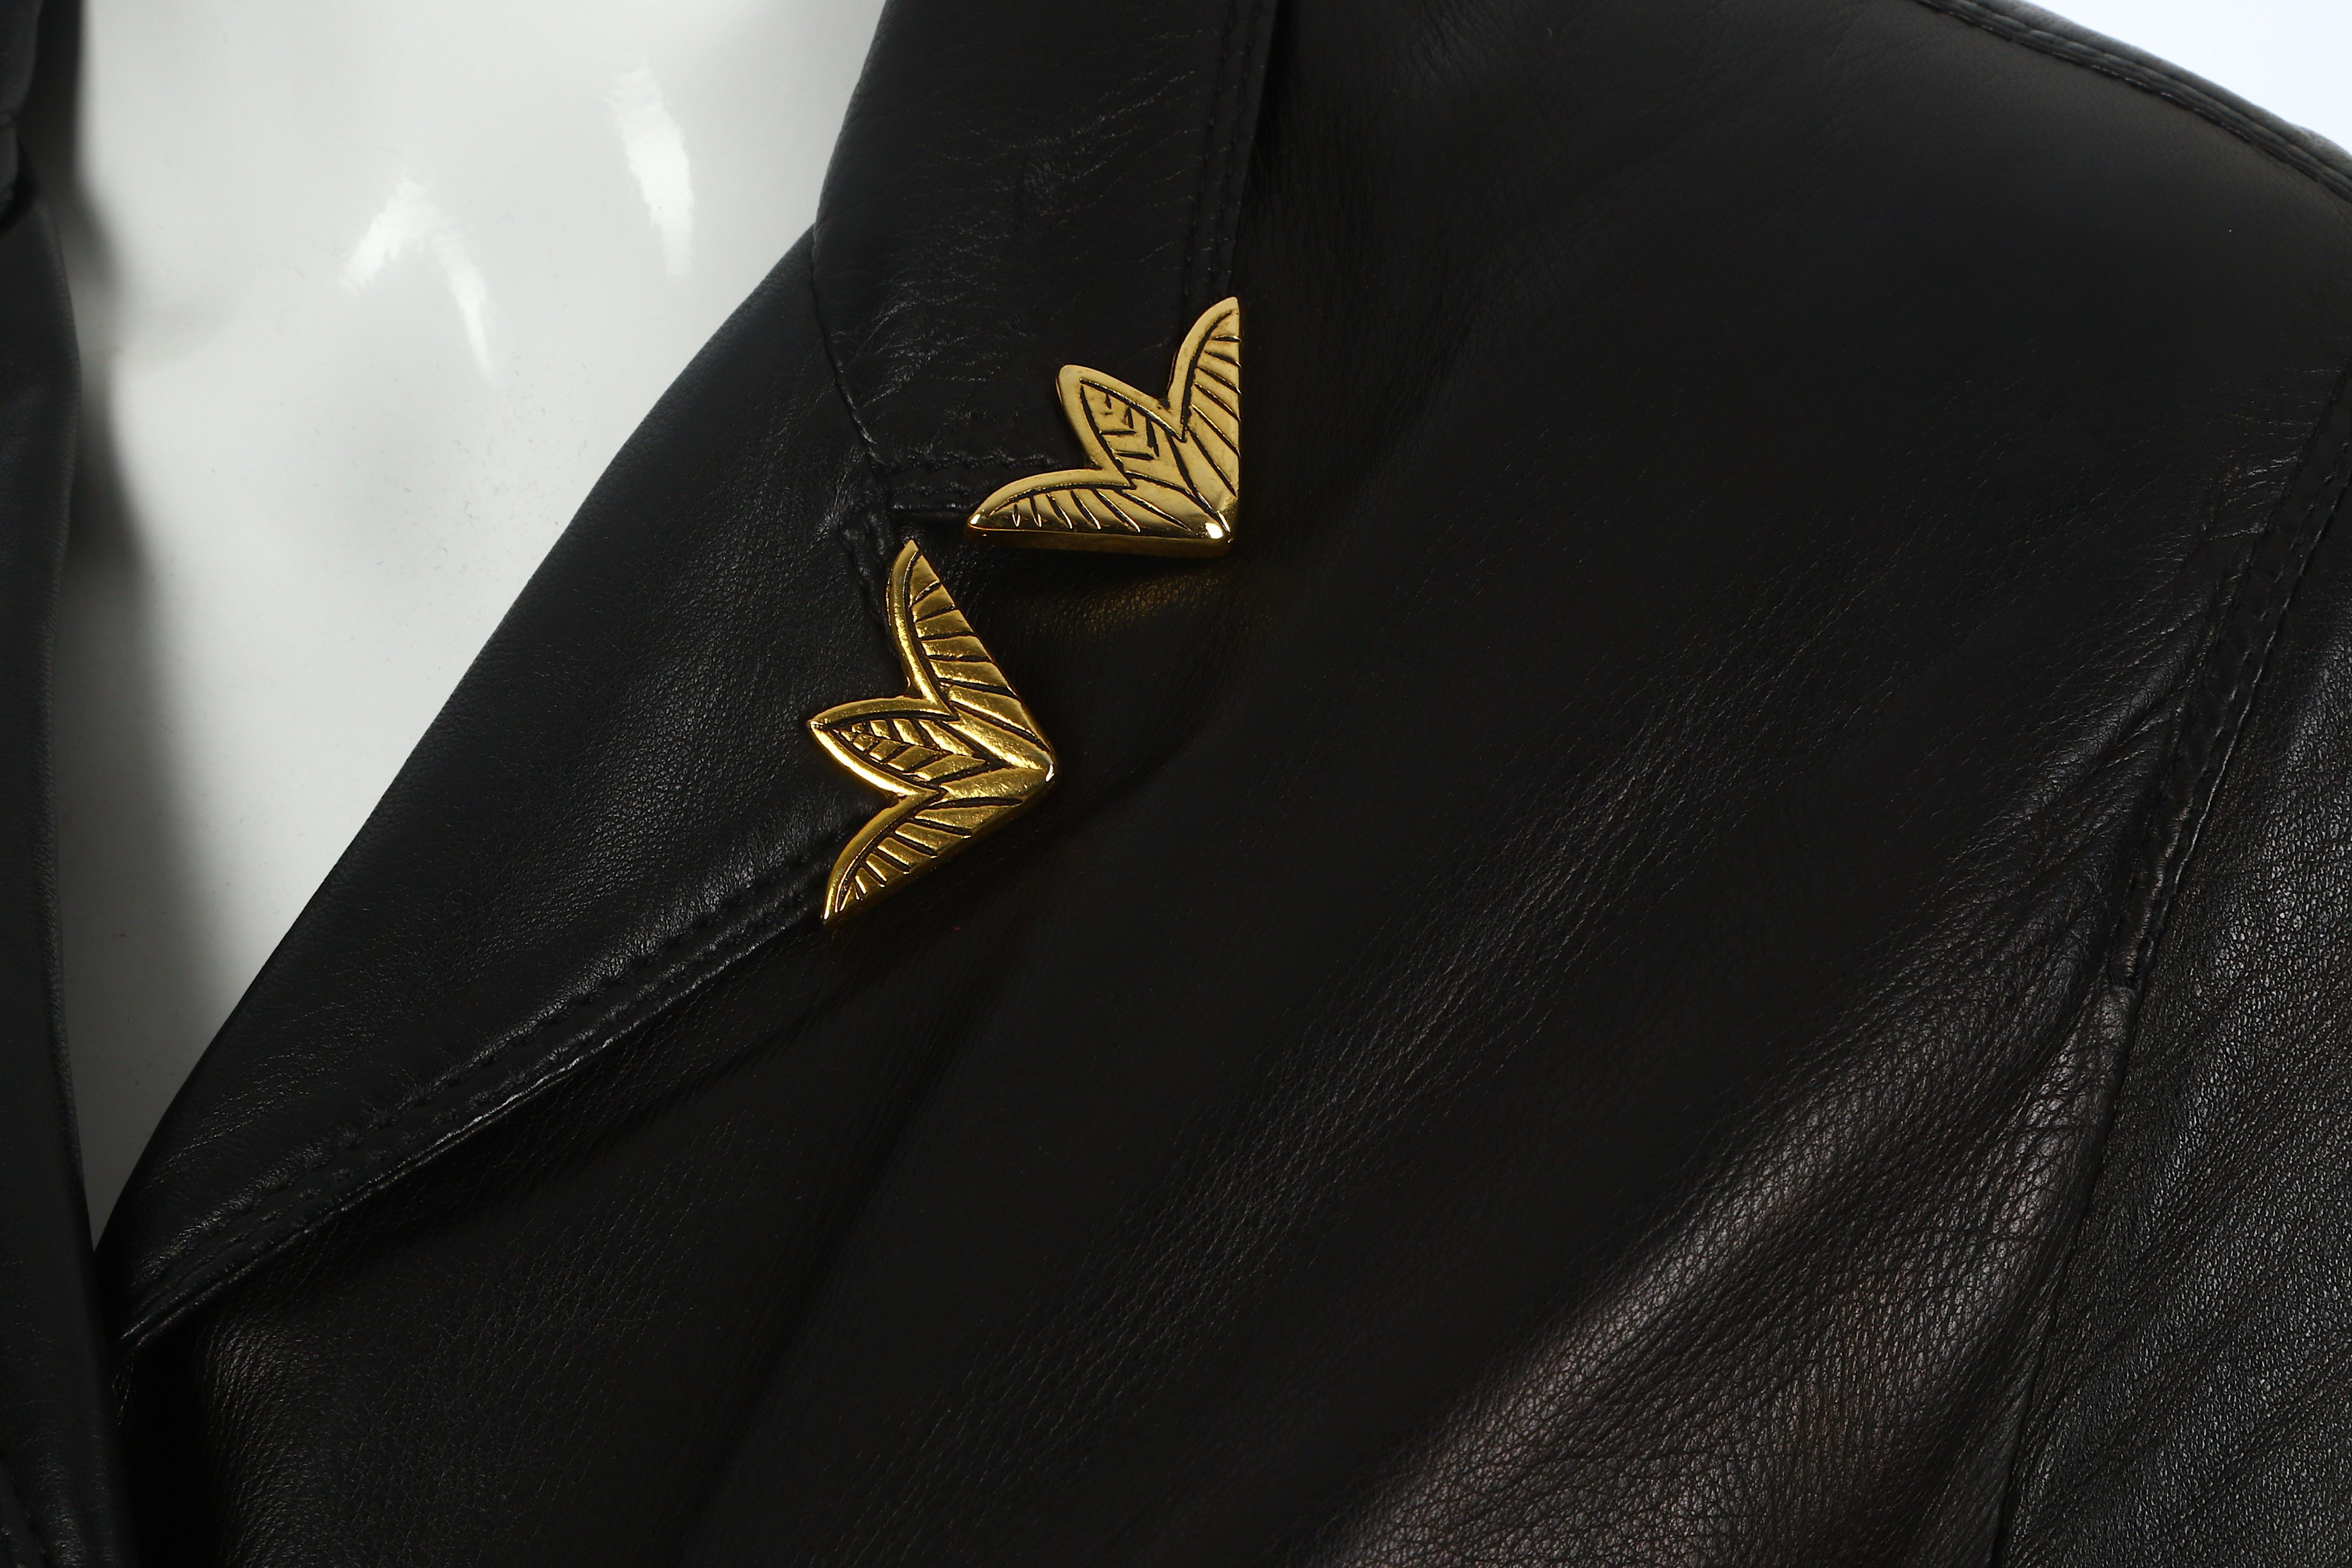 Gianni Versace Black Leather Jacket - Image 5 of 7